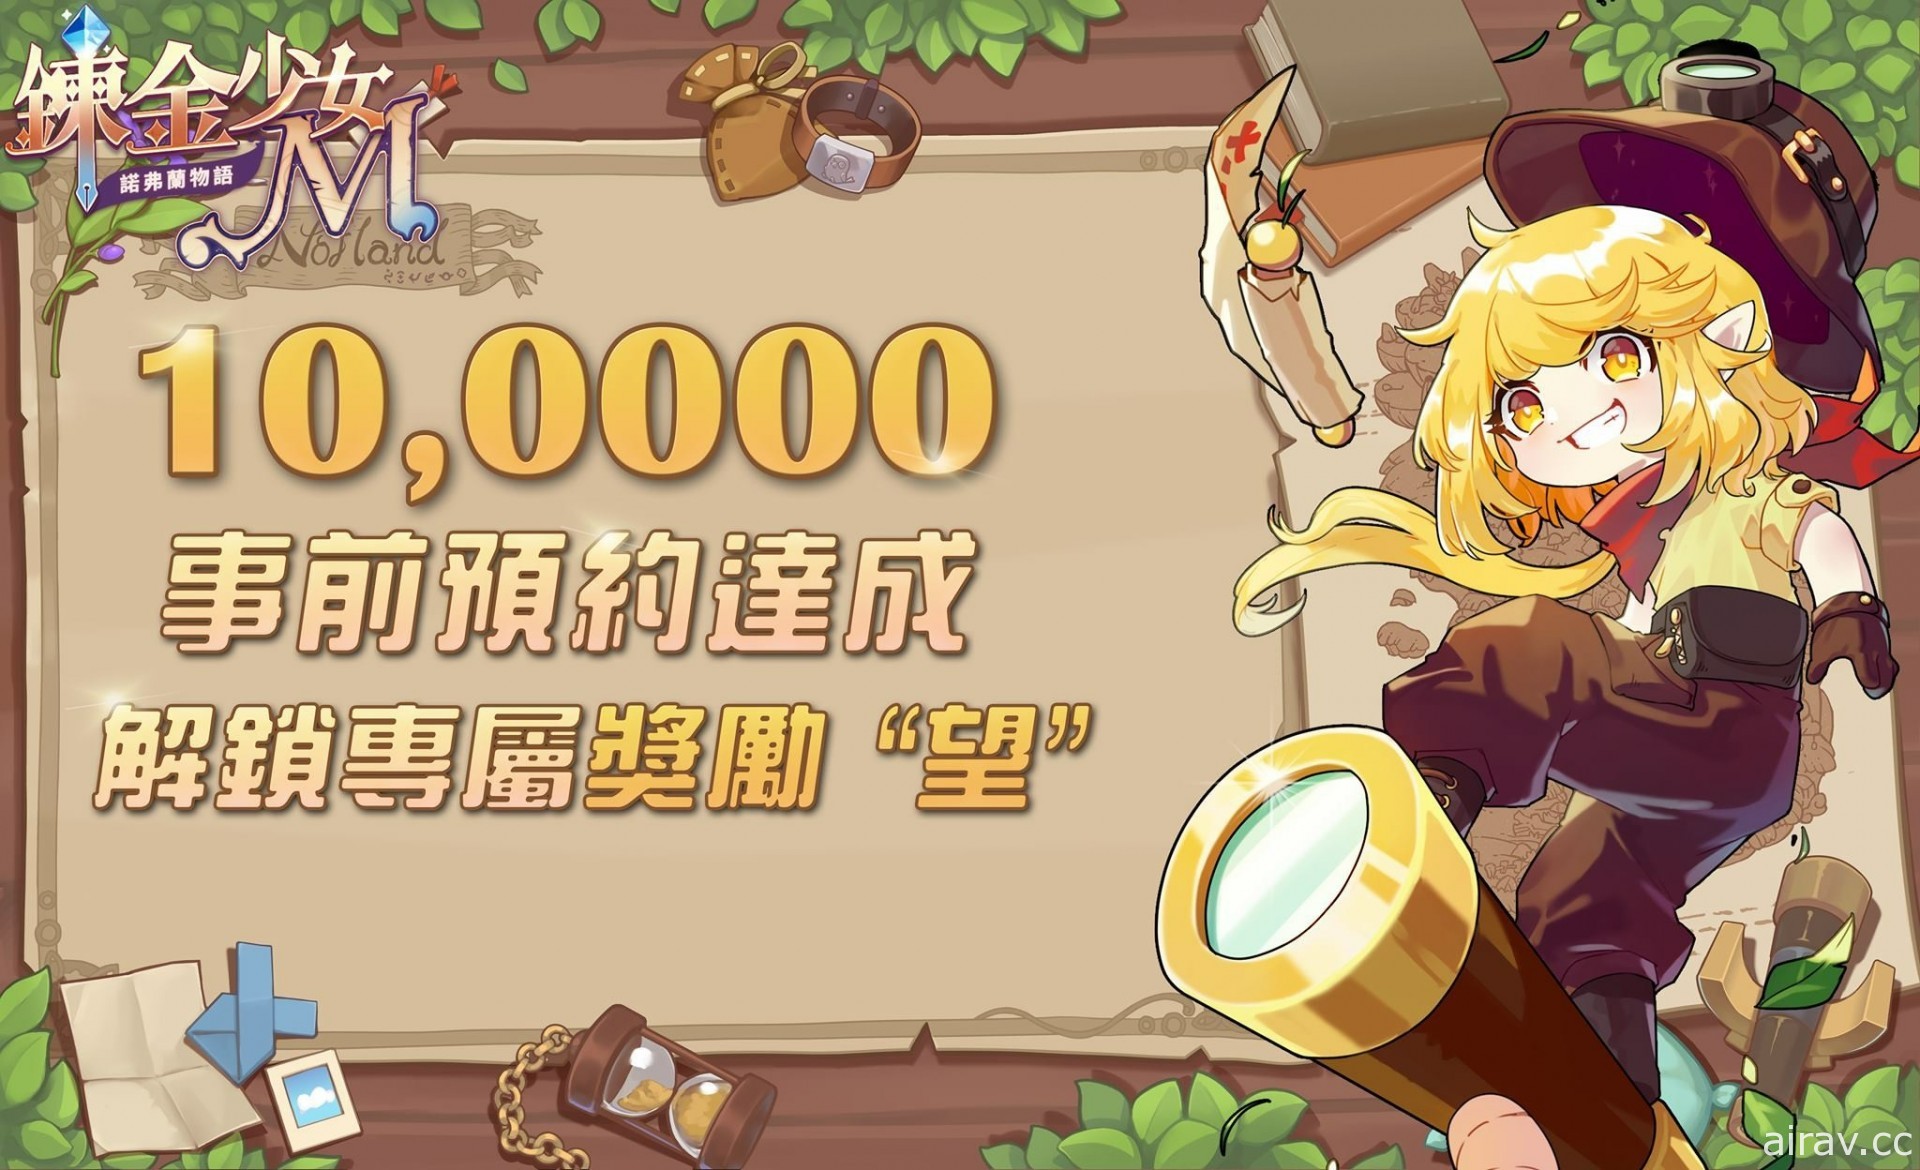 鍊金題材模擬經營遊戲《鍊金少女 M》正式推出 和妖精一起經營鍊金工坊